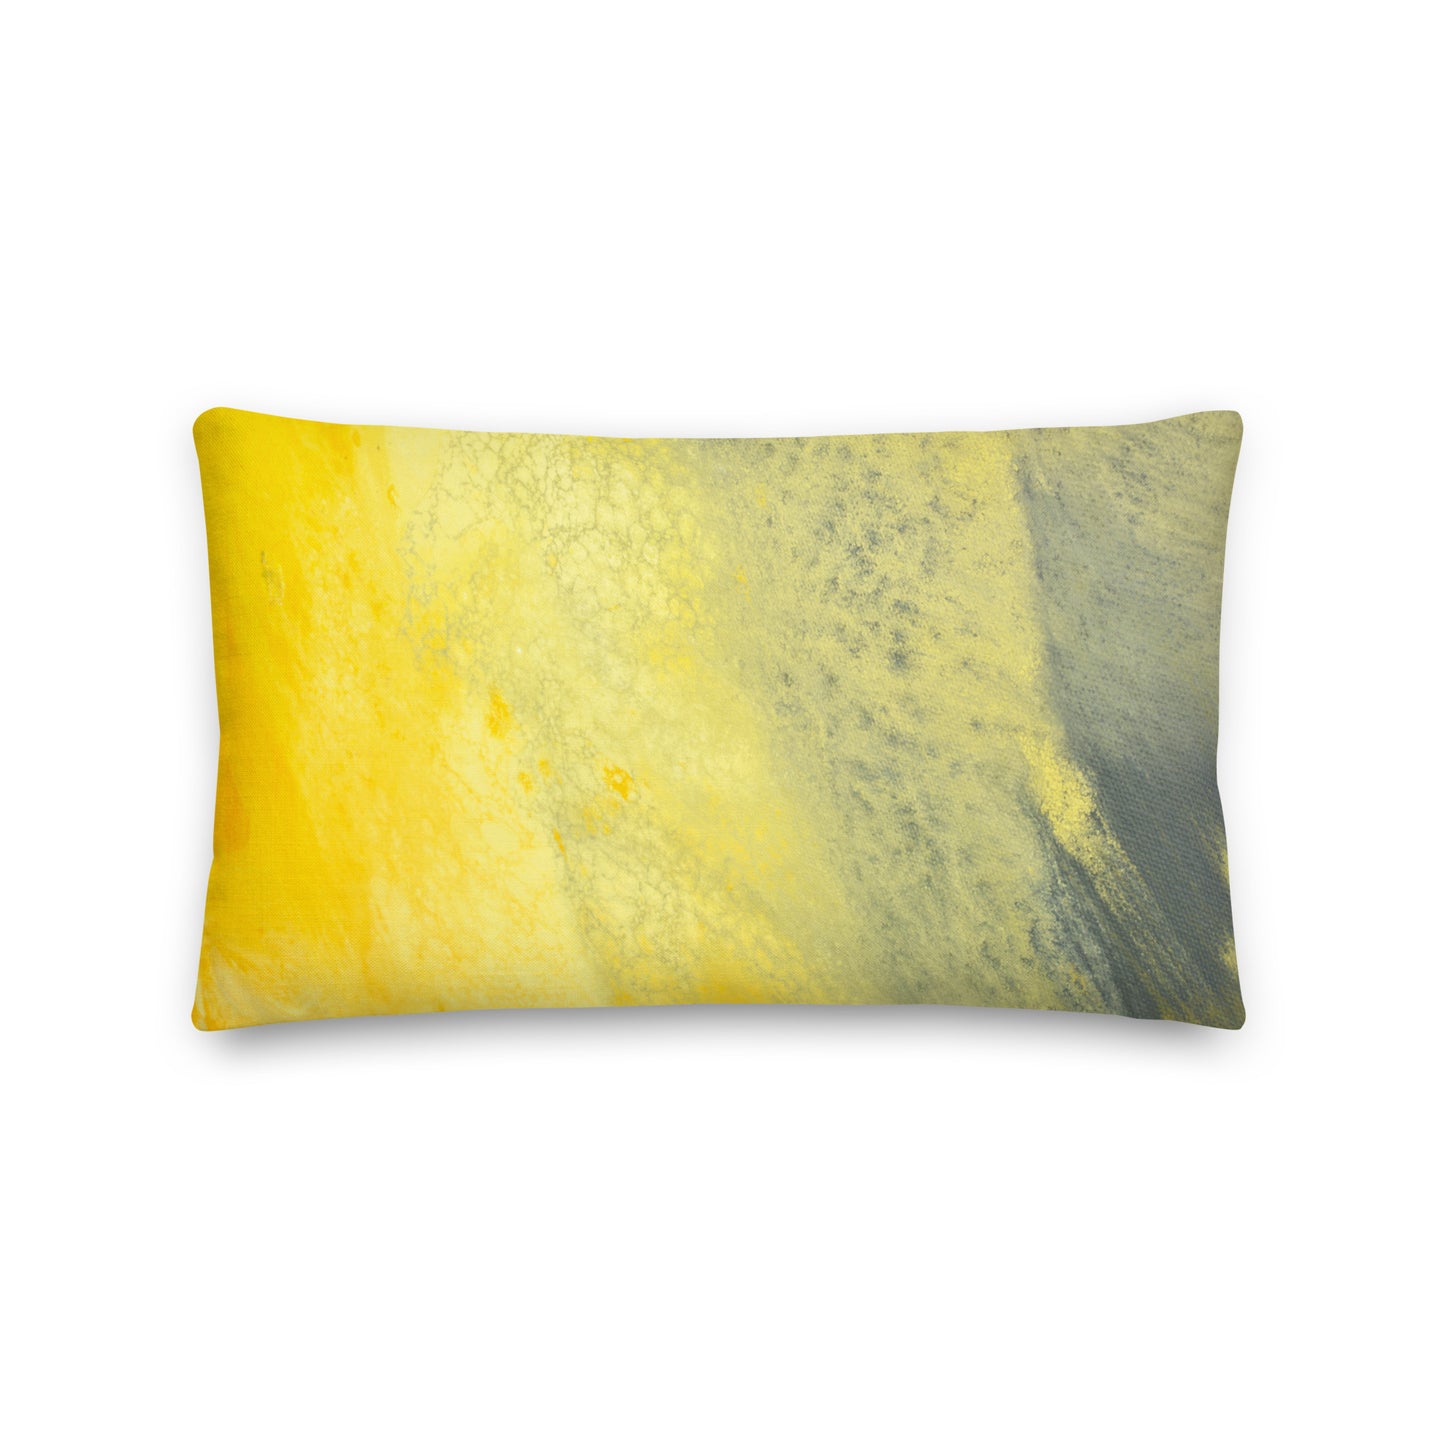 Premium-Kissen – Design in Gelb und Grau